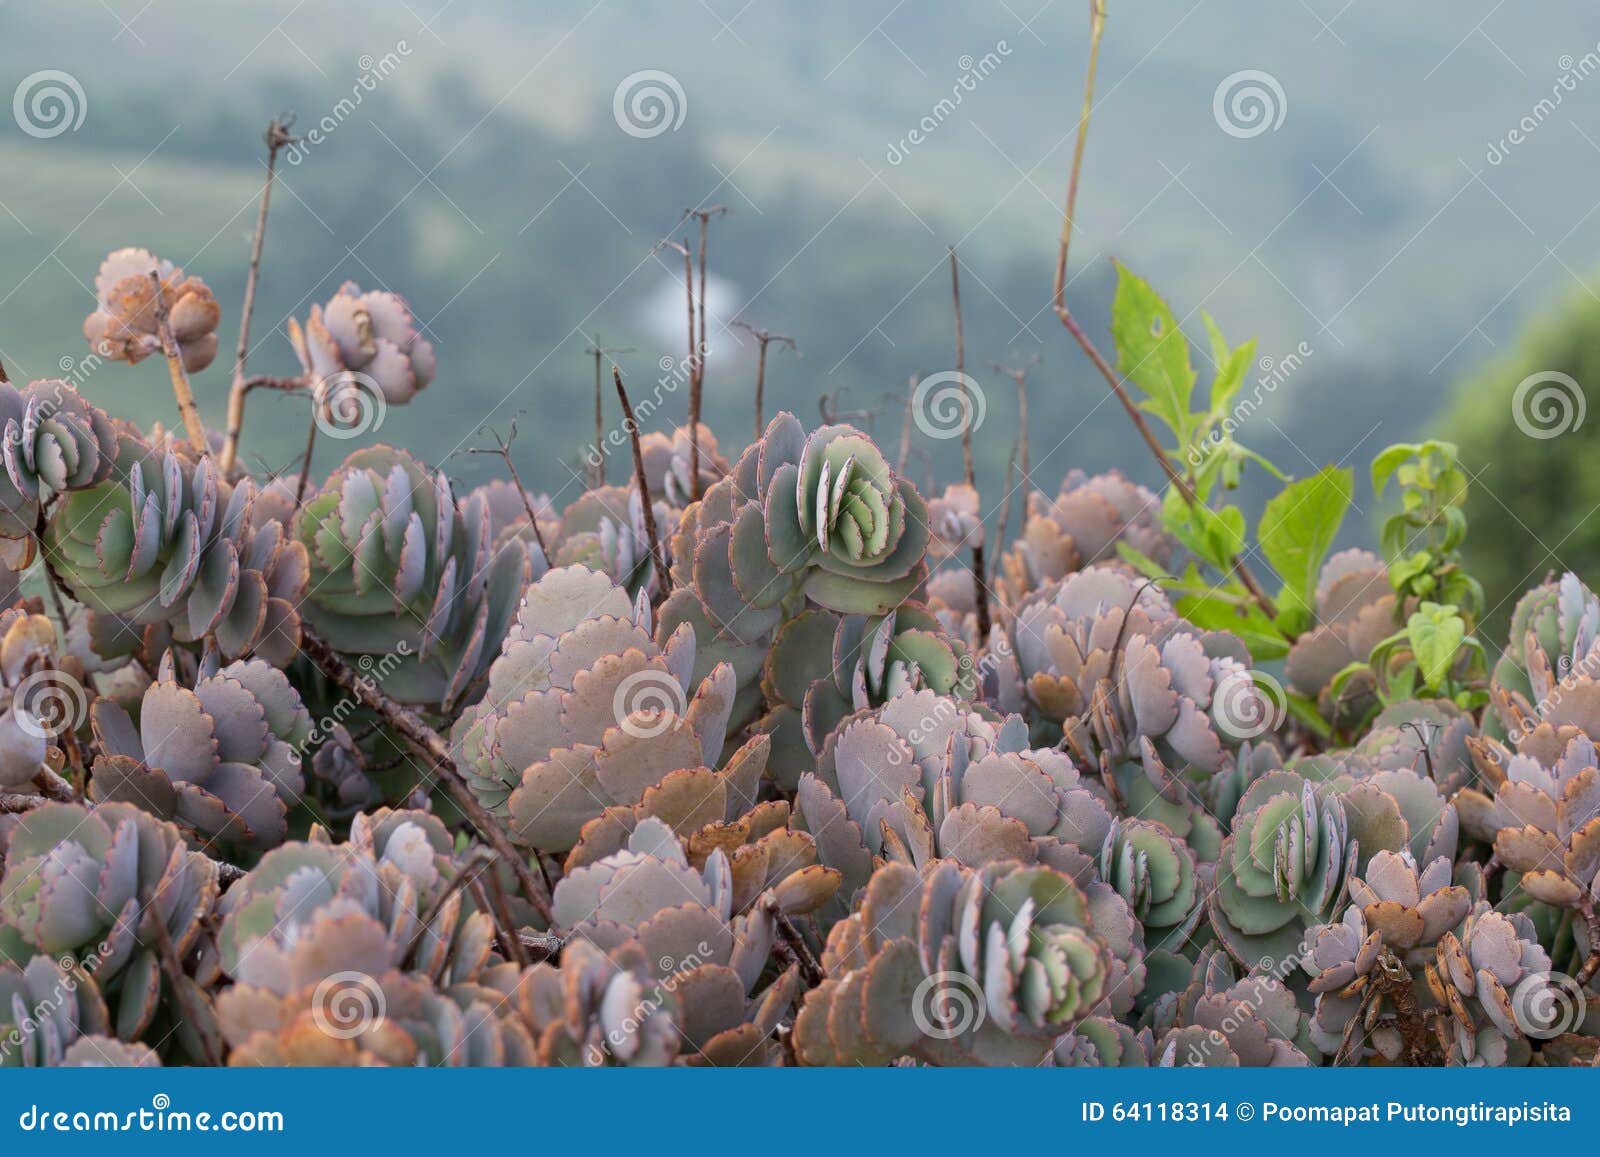 barrera cactus